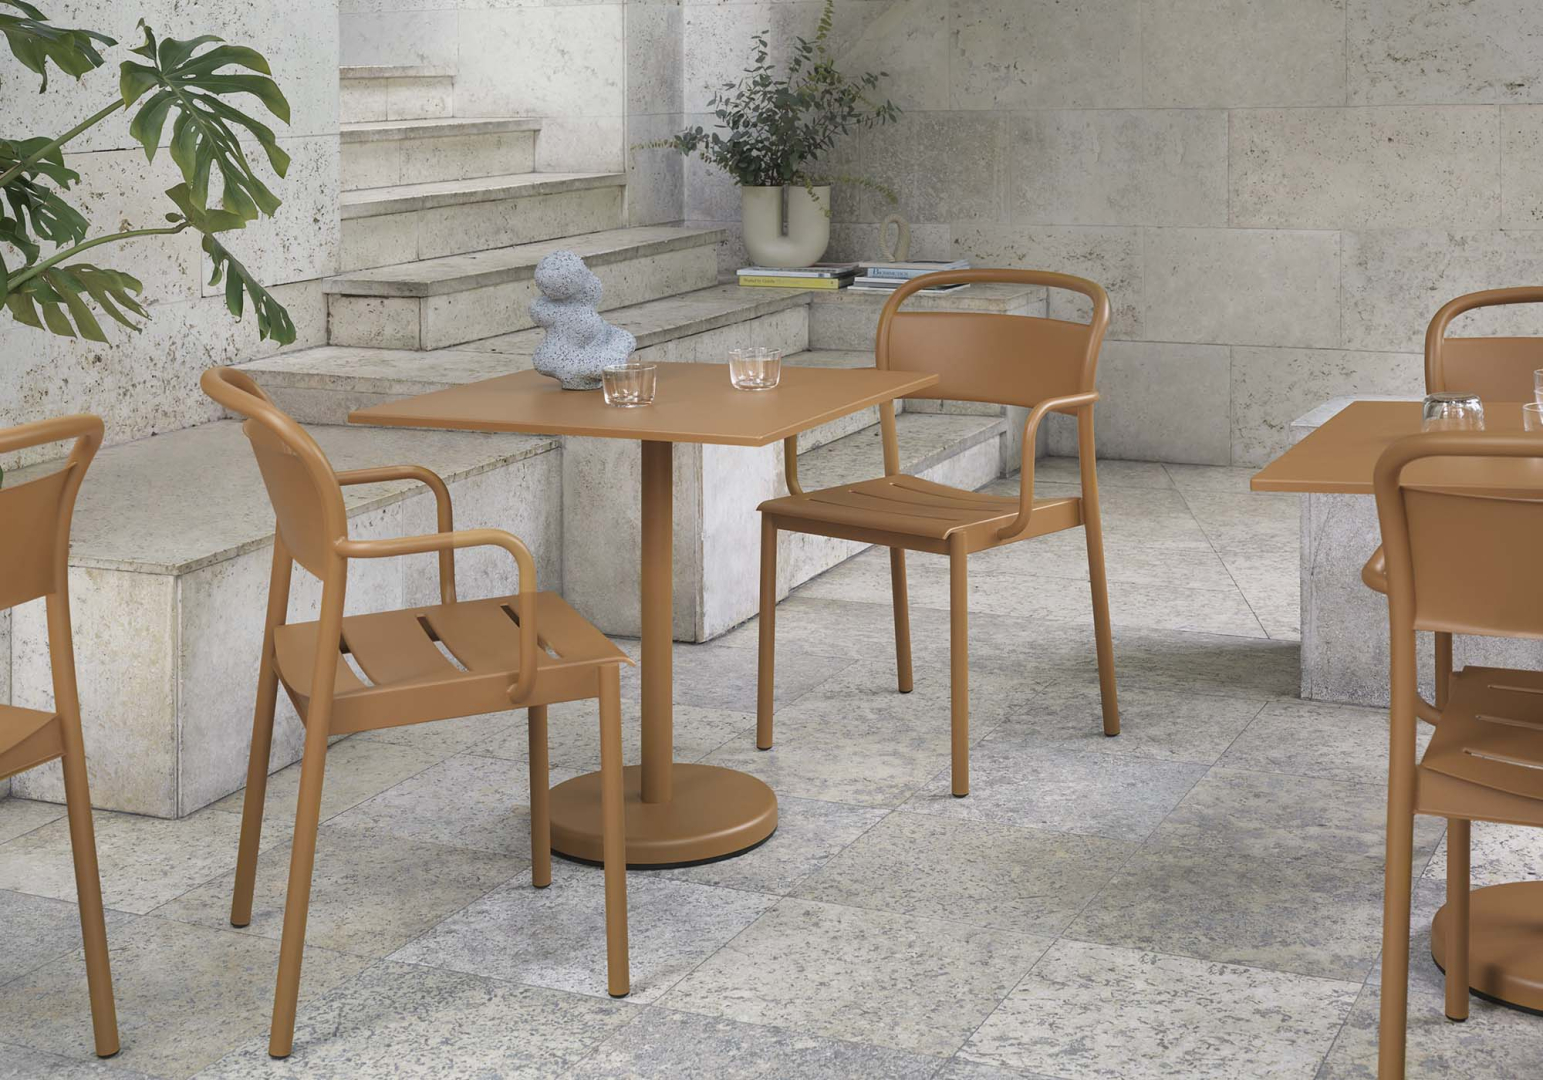 Table Café Linear 70 x 70 cm - MUUTO